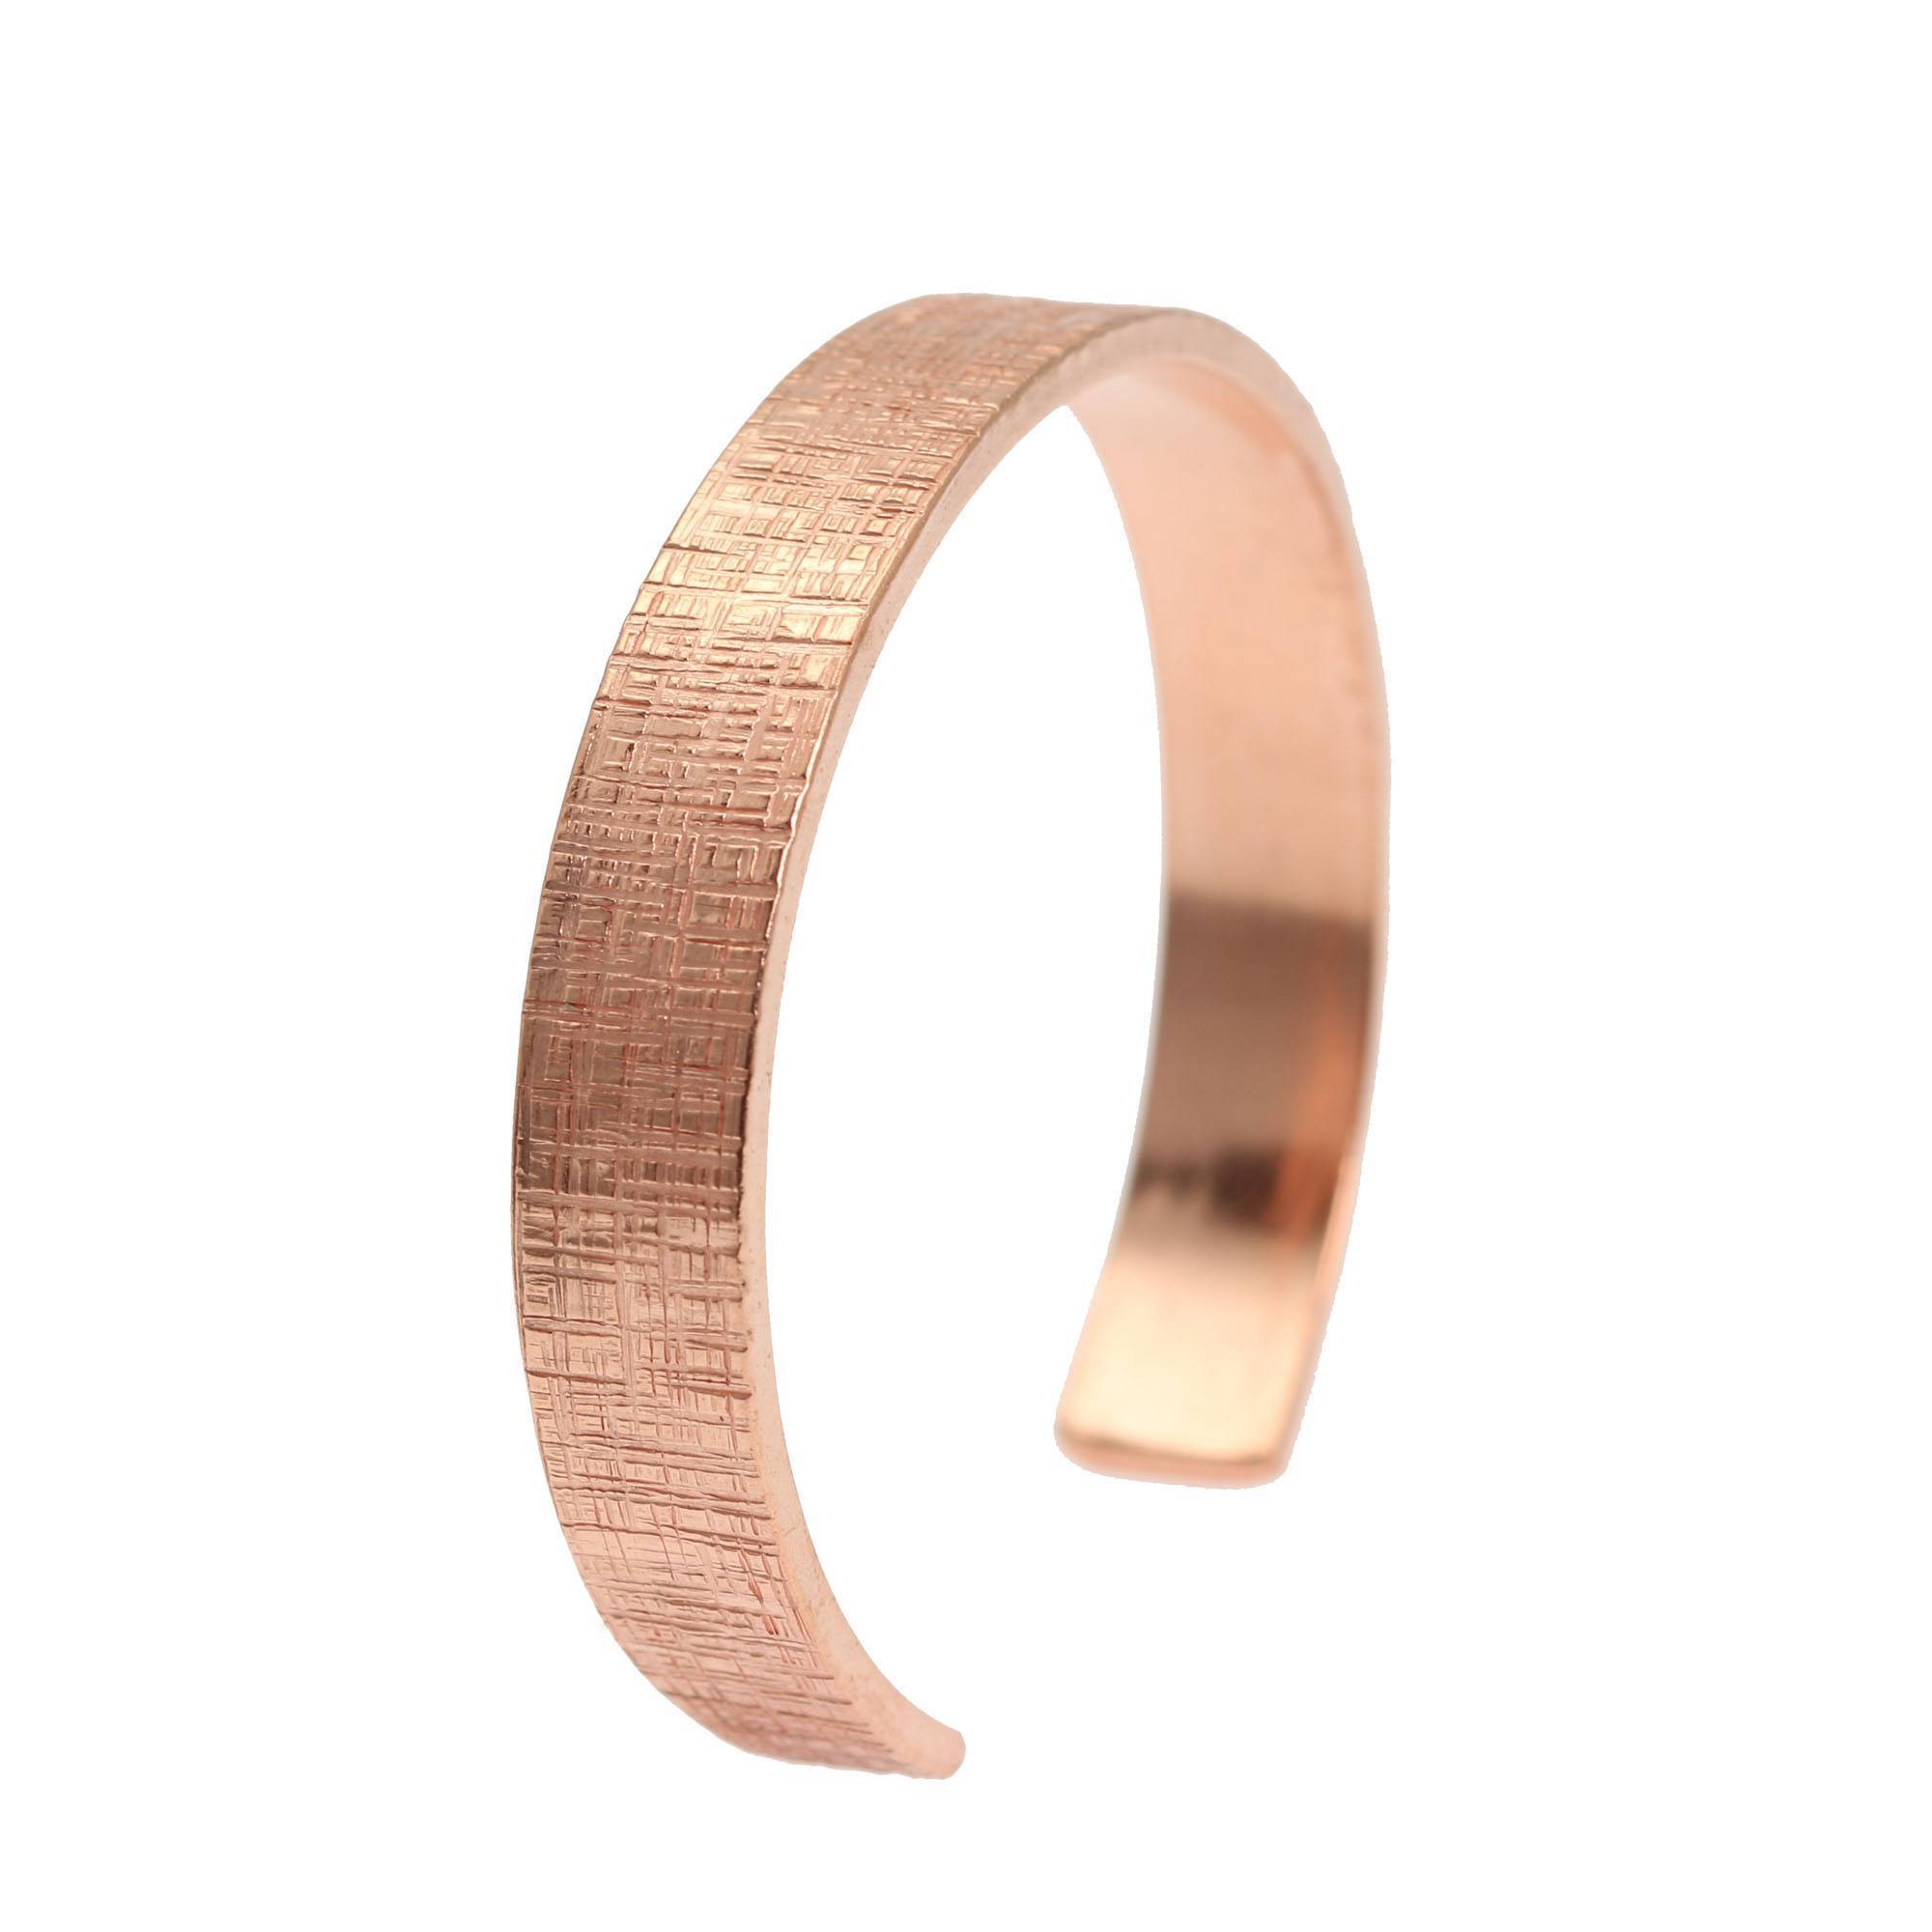 10mm Wide Linen Copper Cuff Bracelet - Solid Copper Cuff